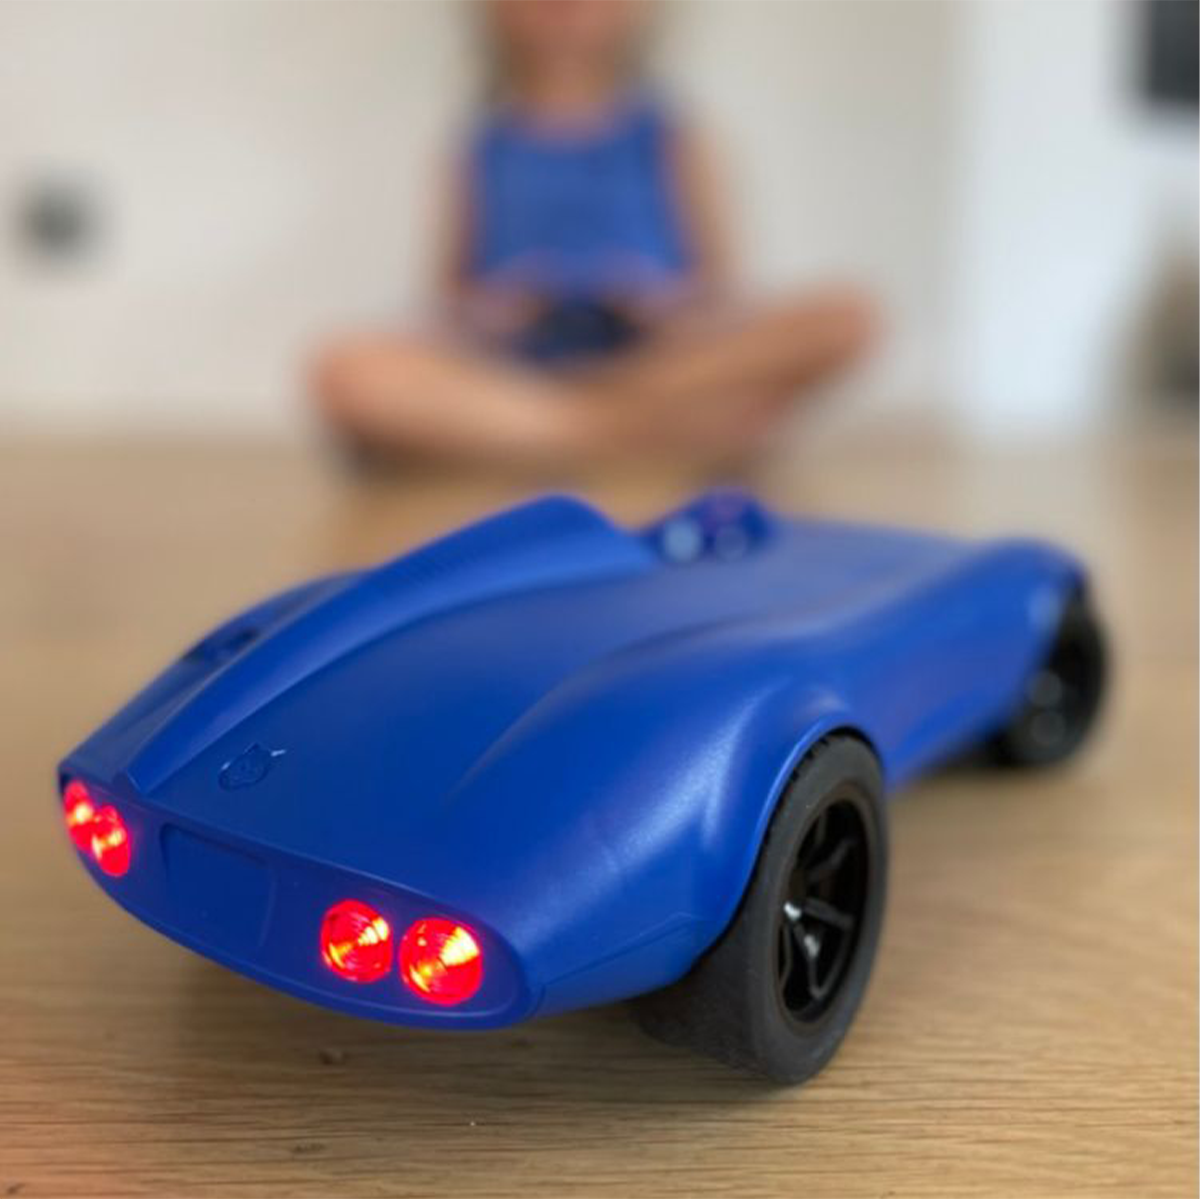 Is jouw kleintje gek op auto's? Dan is deze Kidycar afstandbestuurbare auto in de kleur blauw van Kidywolf echt iets voor jouw kleine spruit. Deze stoere auto kan namelijk op afstand bestuurd worden met de afstandsbediening. Hoe cool is dat?! VanZus